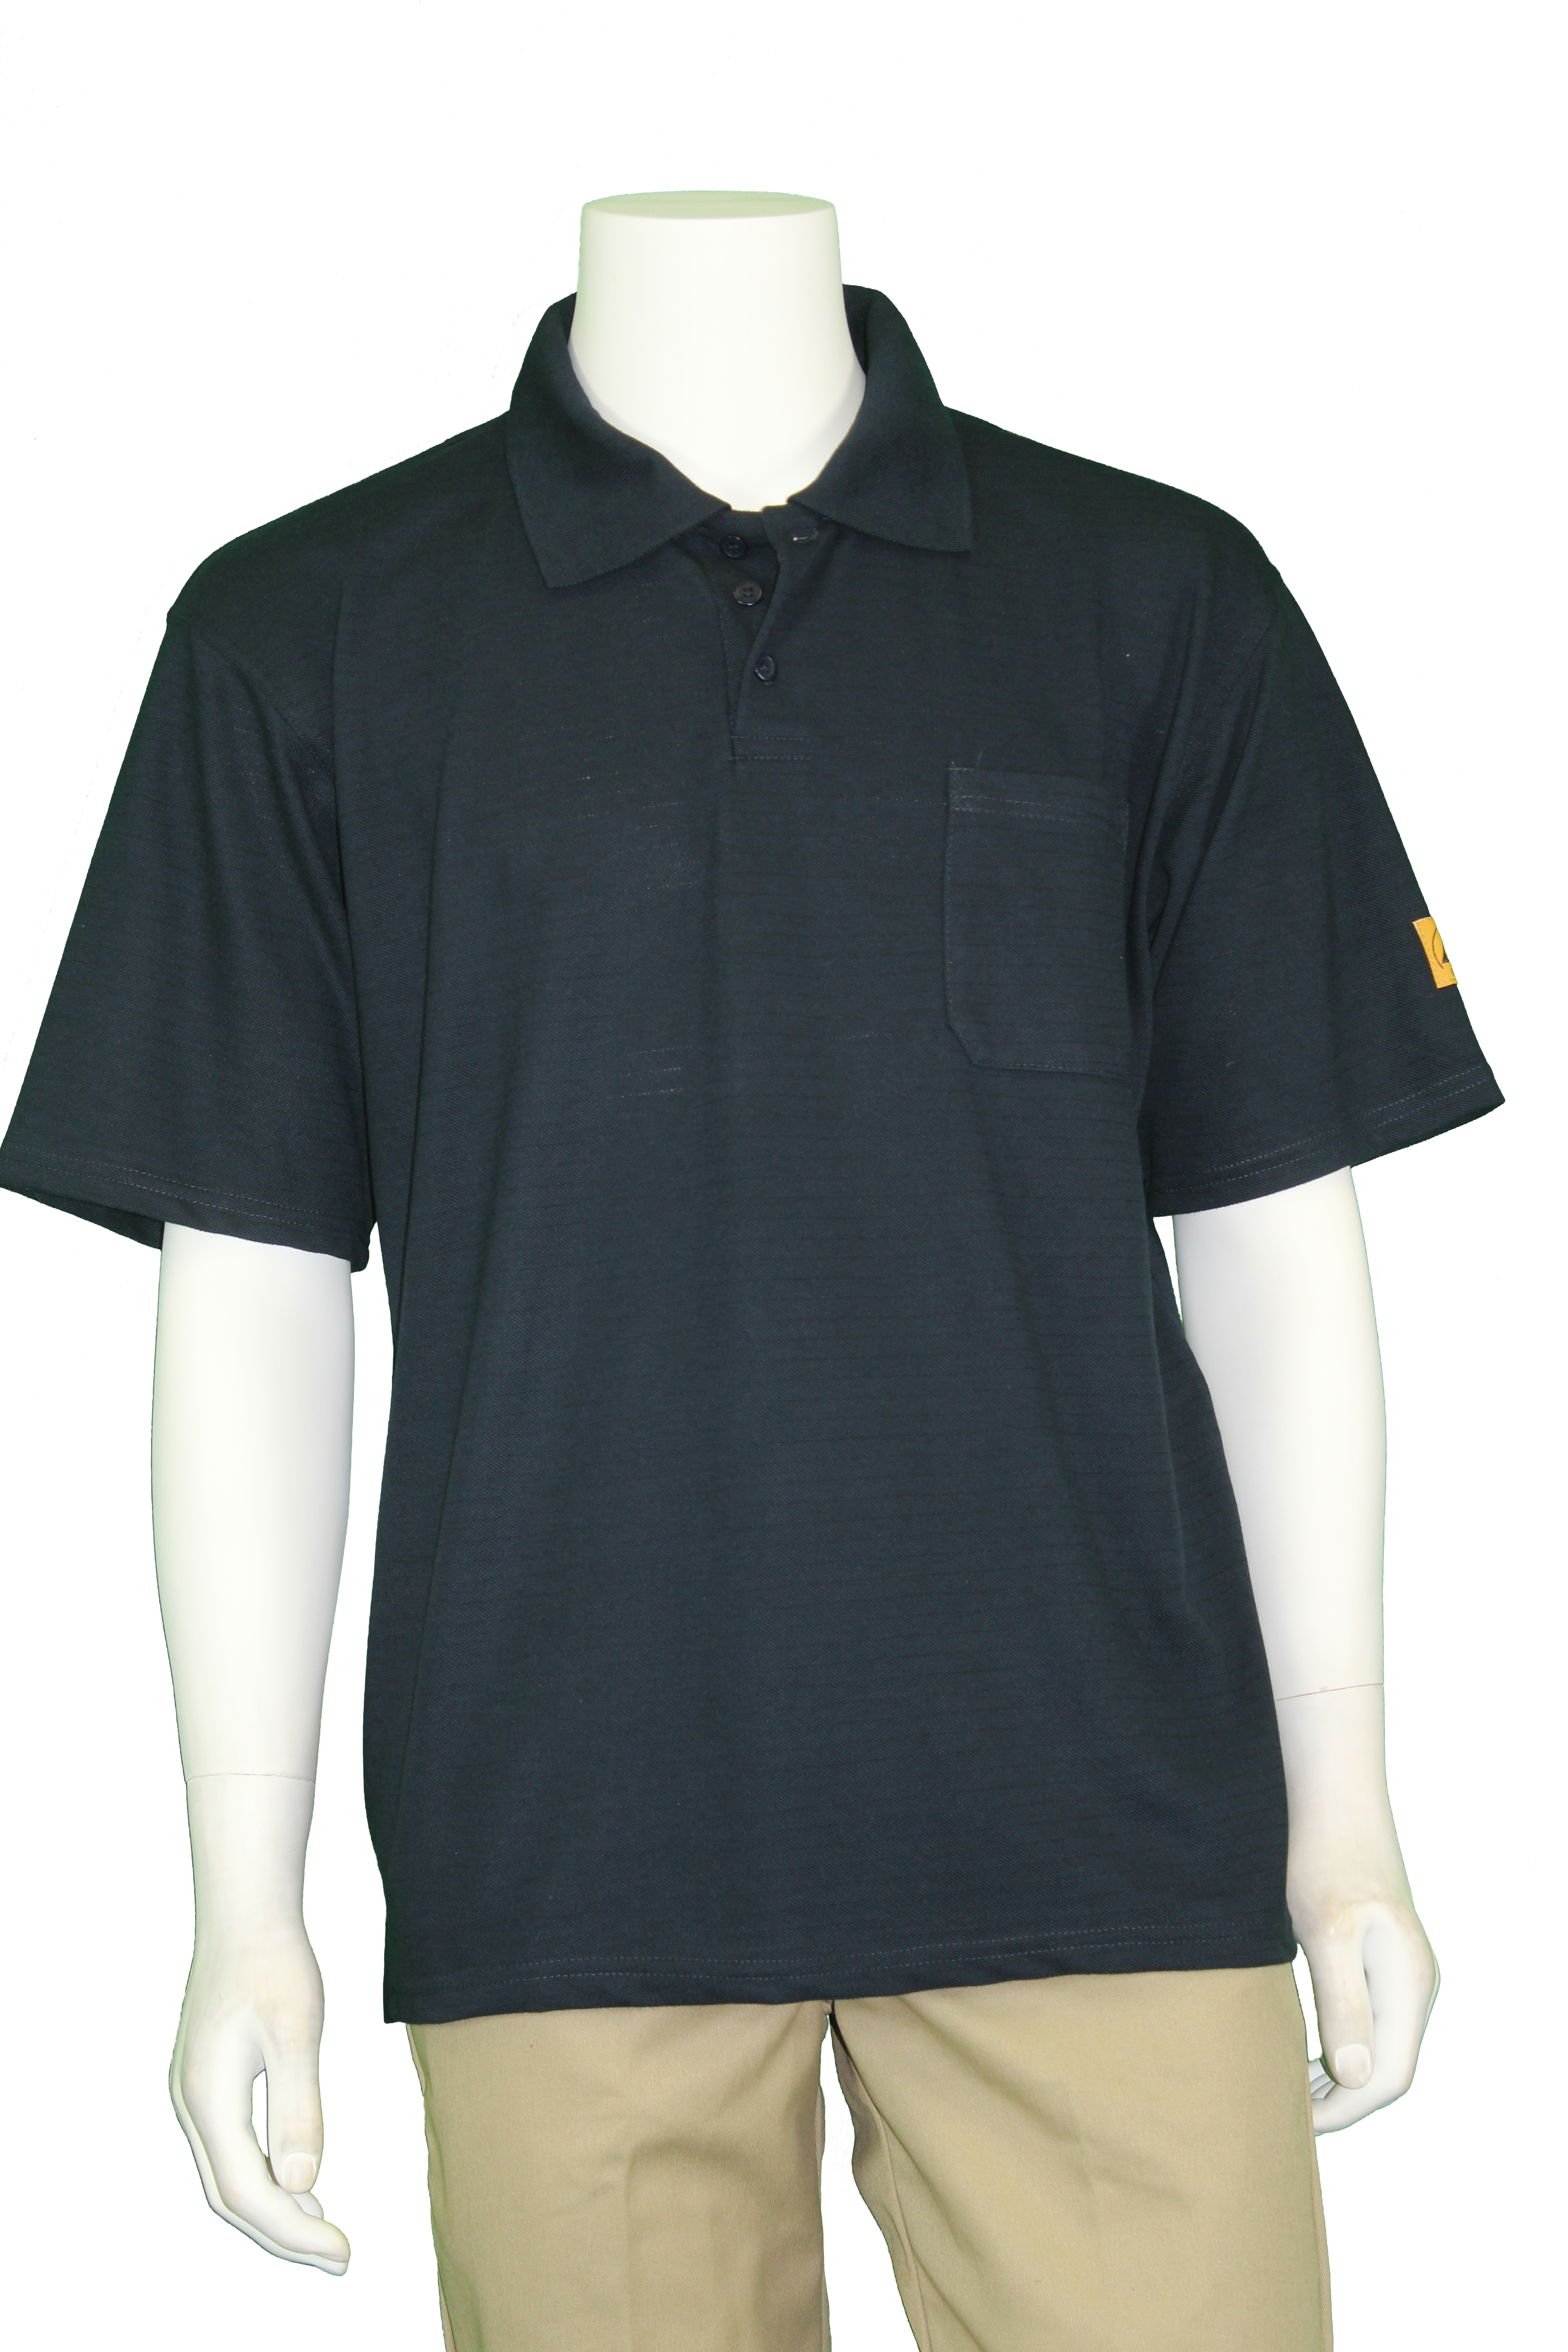 PKS-61 – Tech Wear ESD Garments